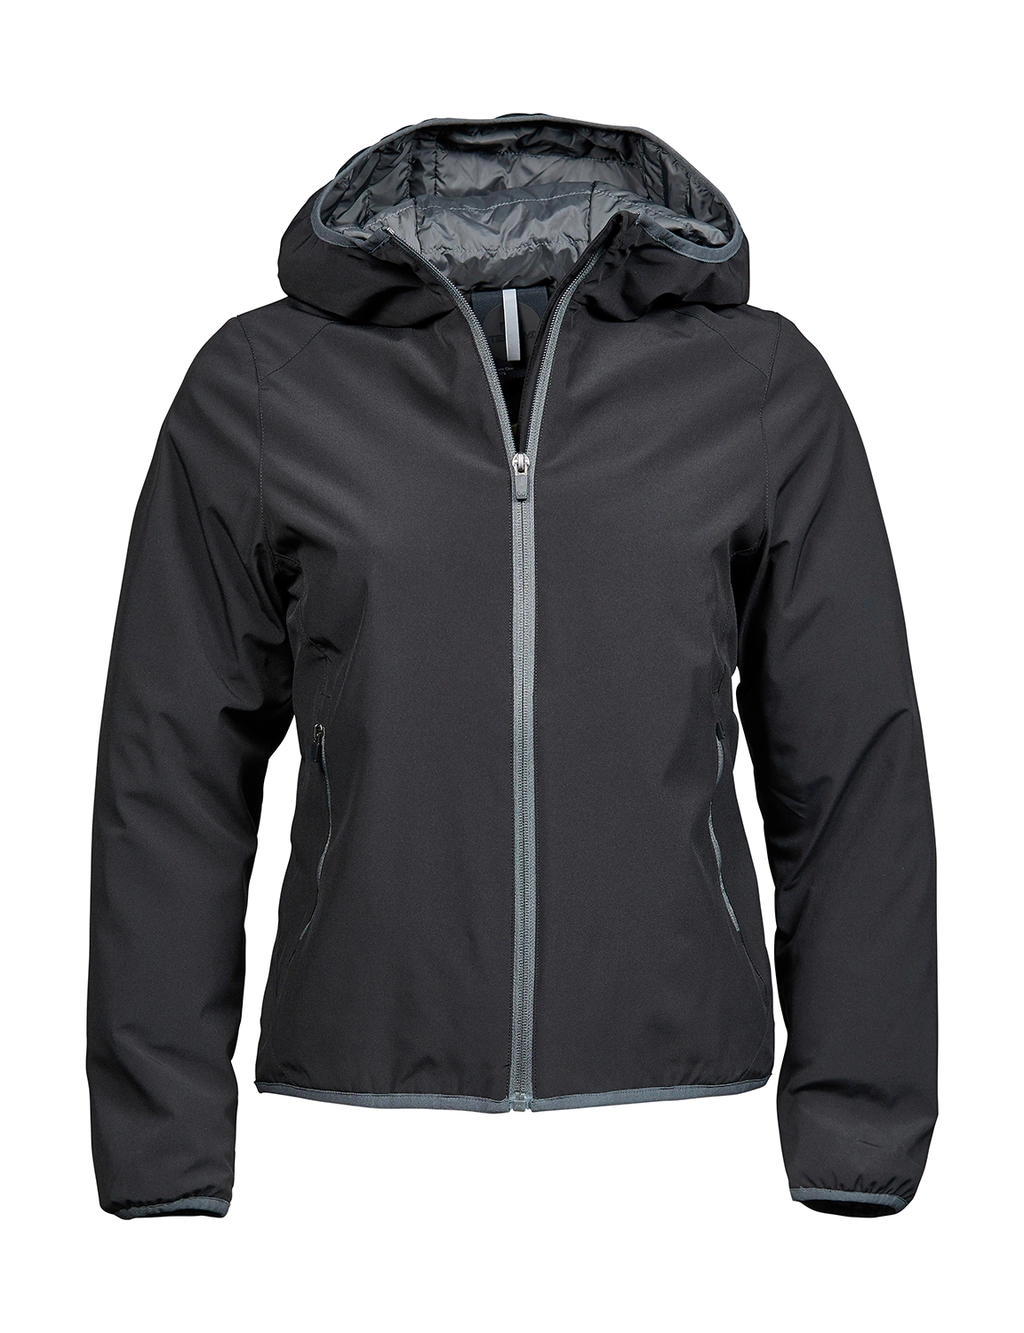 Ladies` Competition Jacket zum Besticken und Bedrucken in der Farbe Black/Space Grey mit Ihren Logo, Schriftzug oder Motiv.